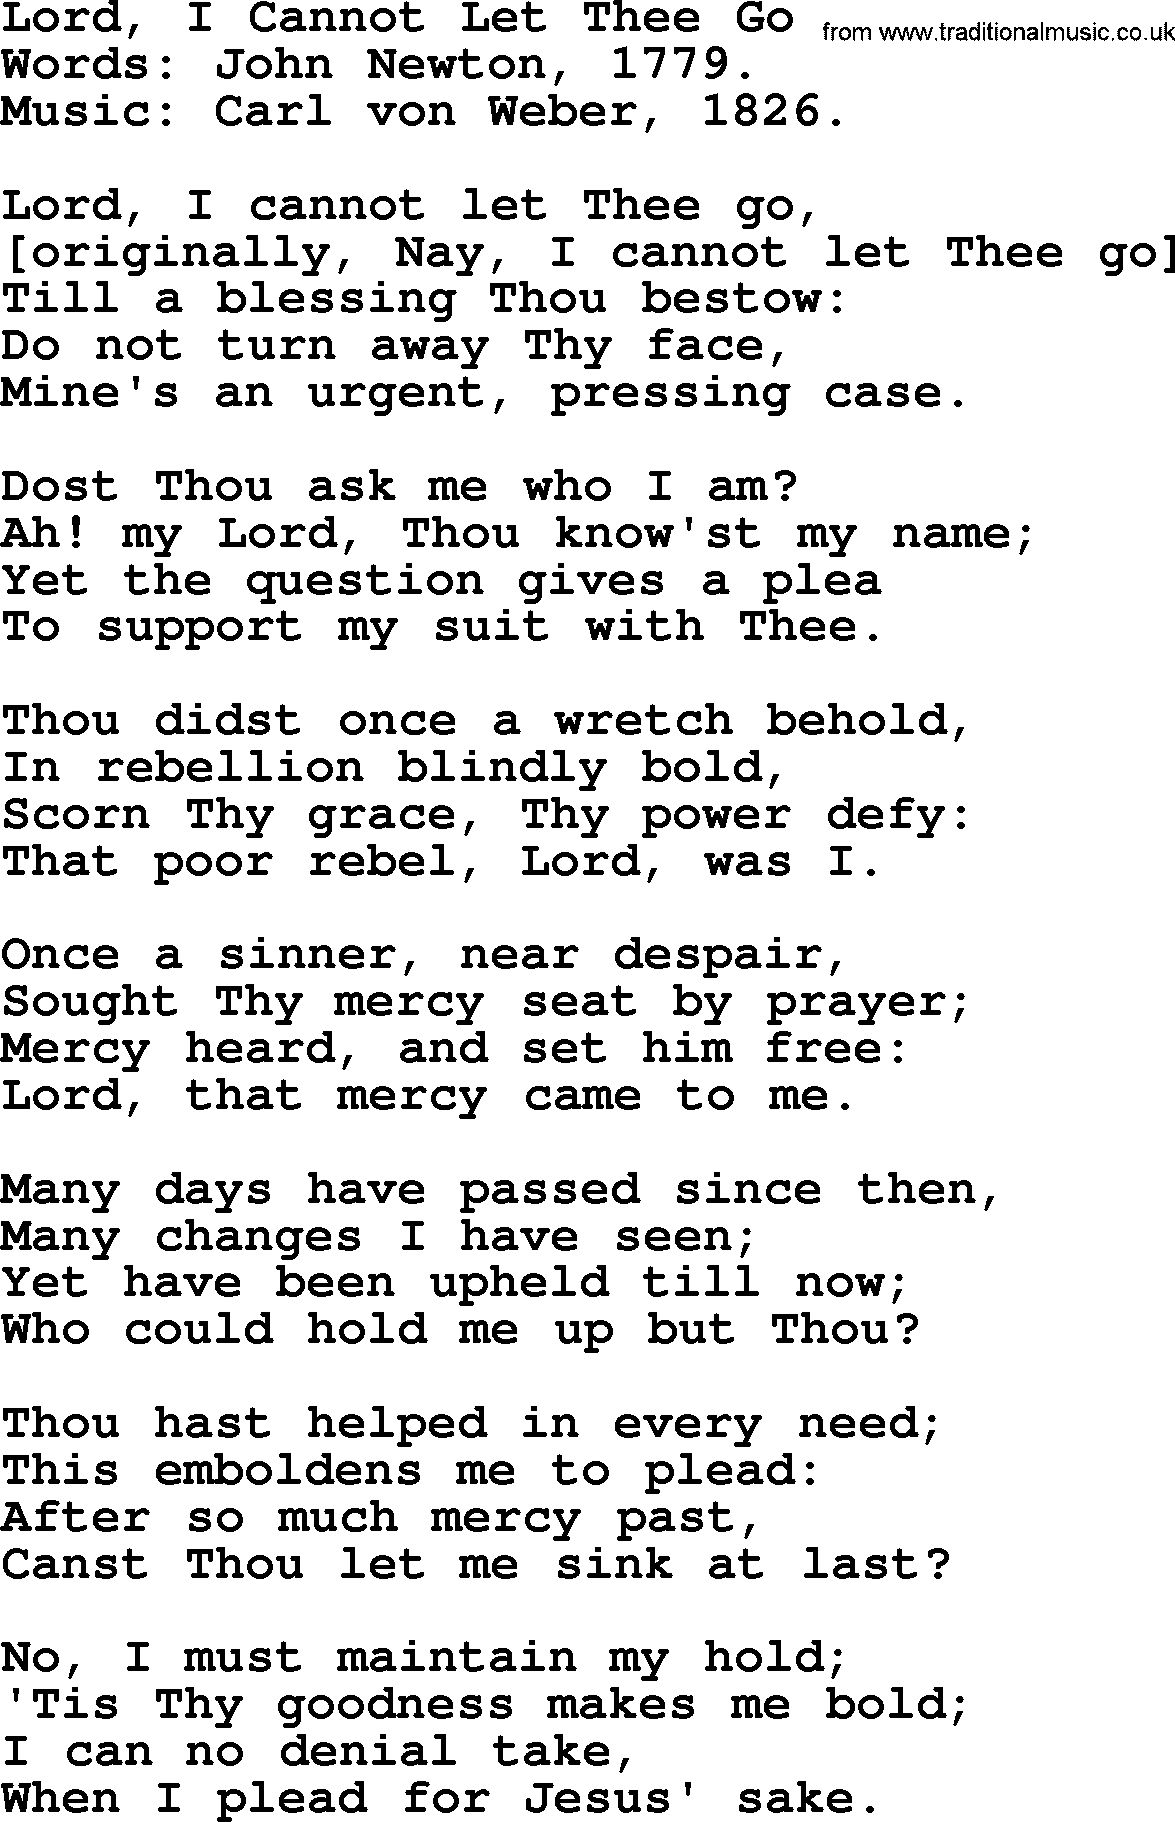 John Newton hymn: Lord, I Cannot Let Thee Go, lyrics